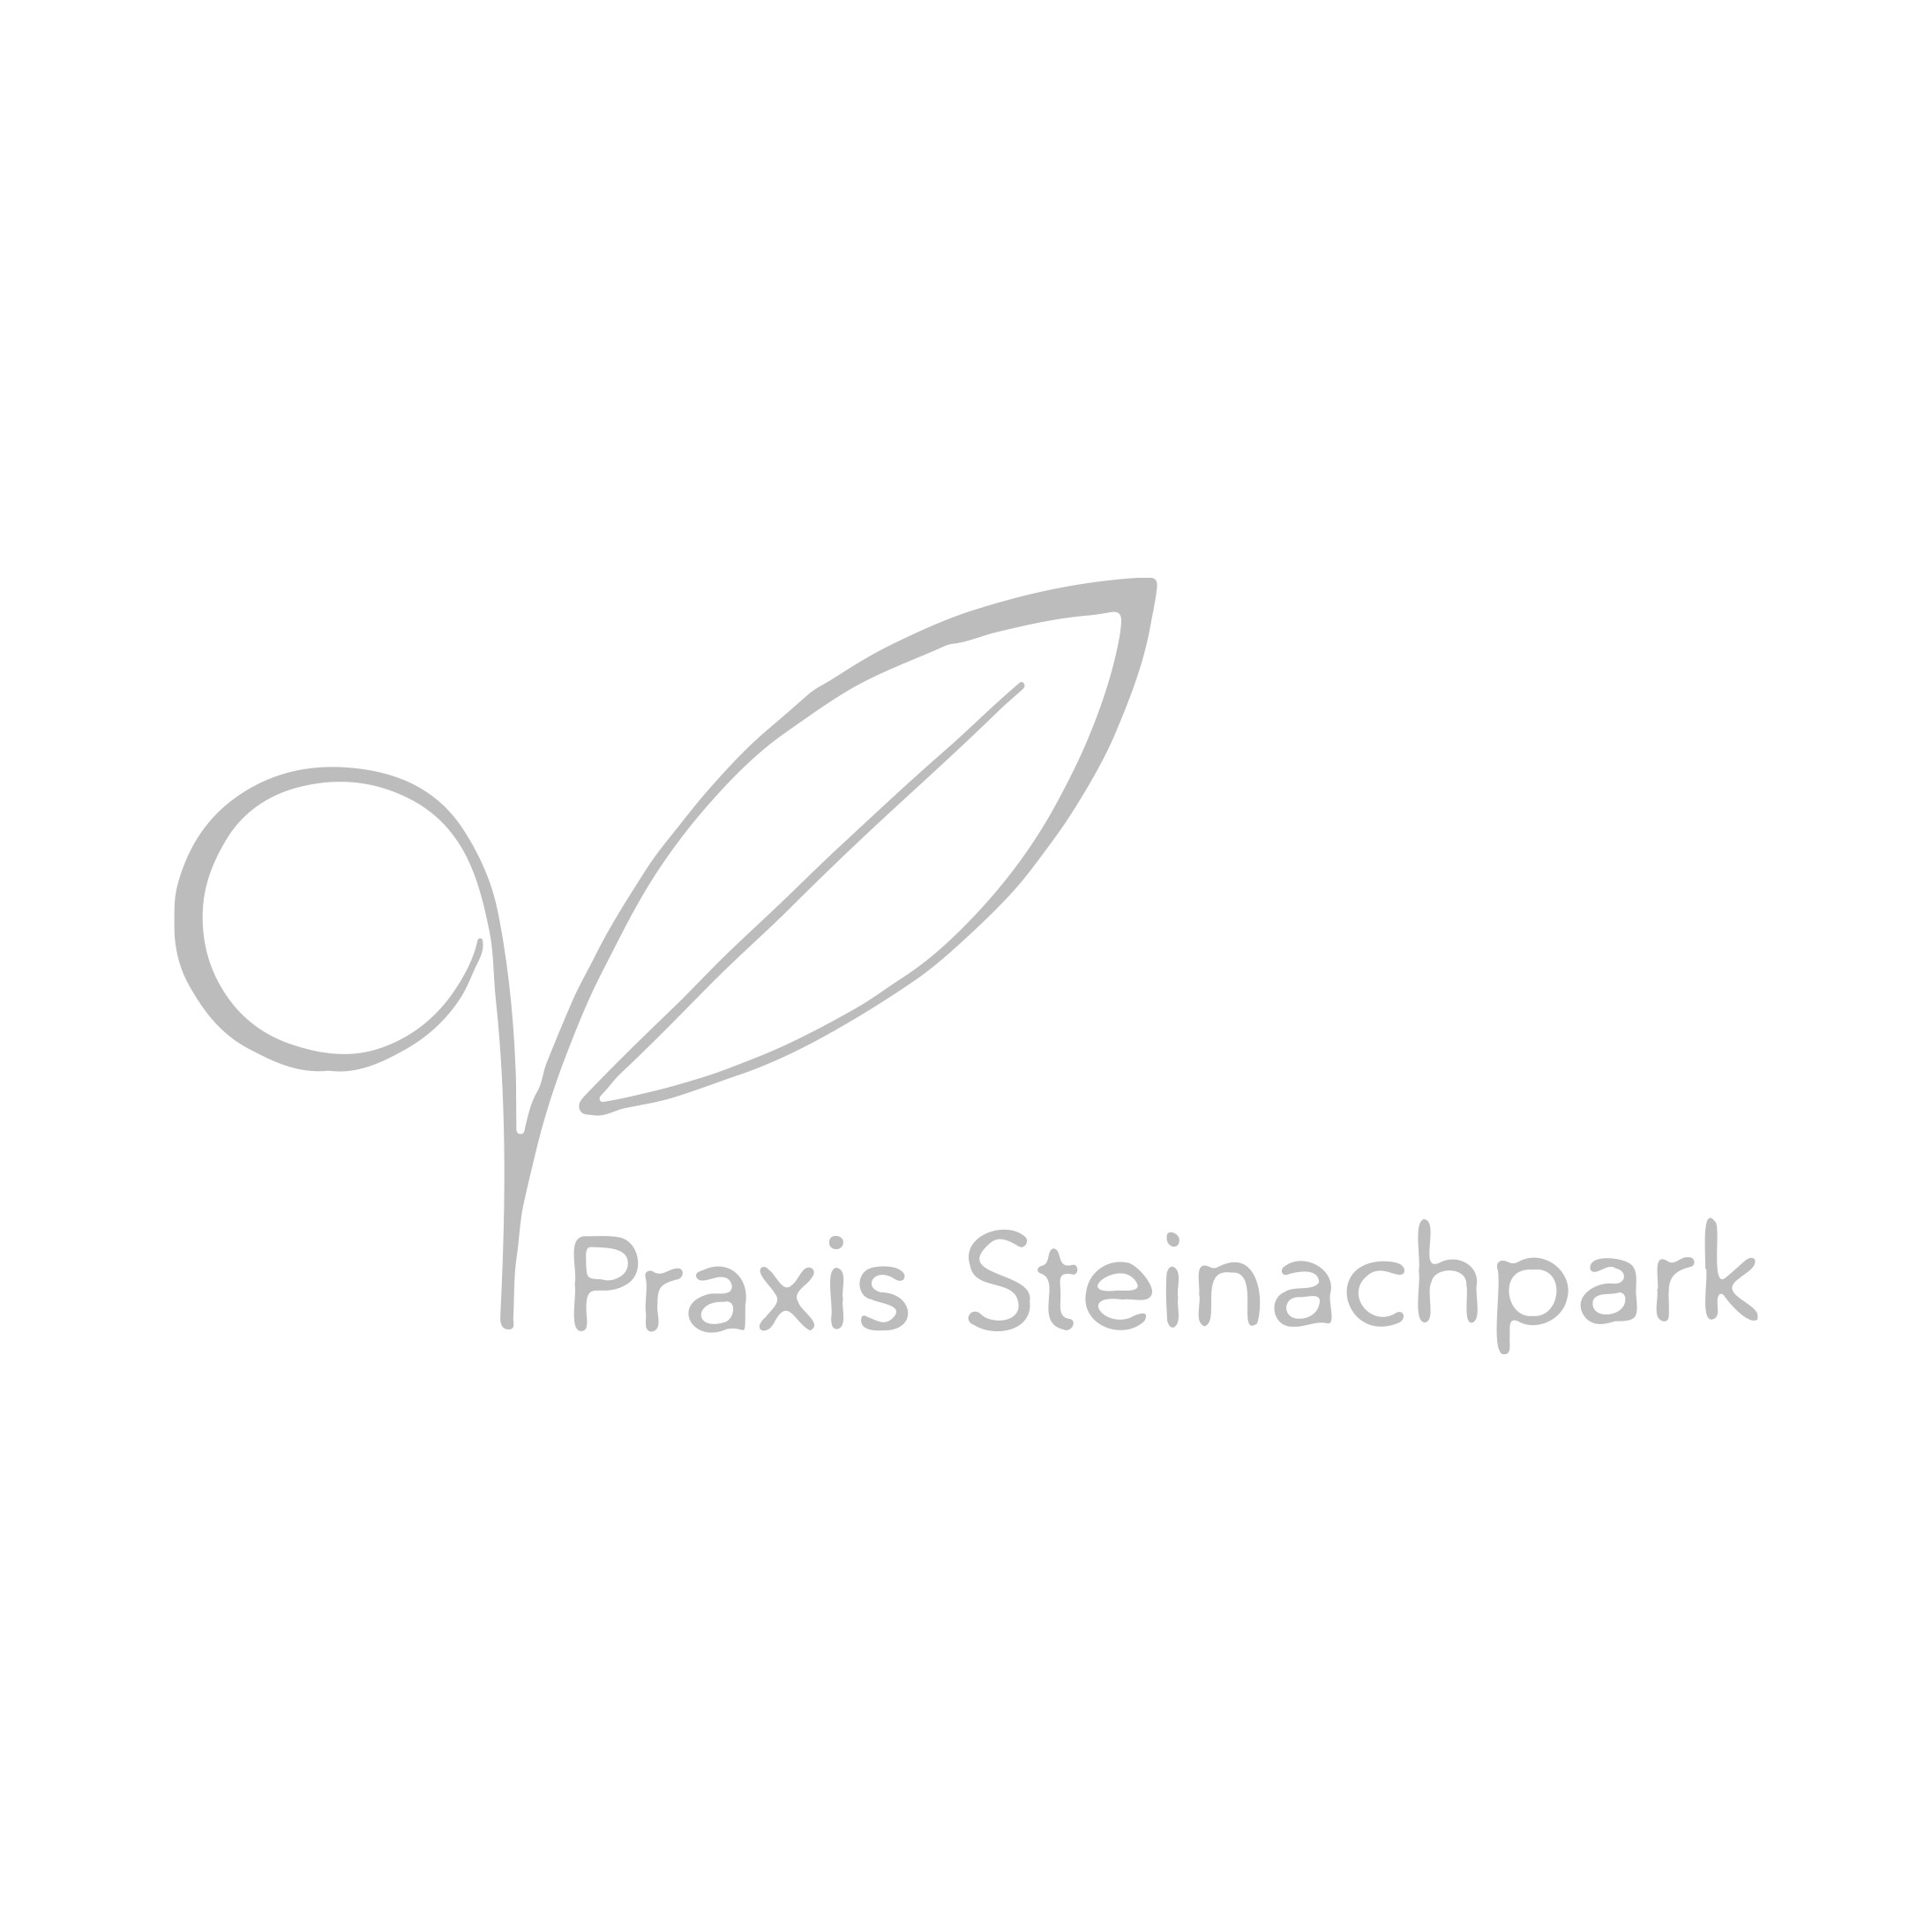 ASC_Logo_Kunde_Praxis Steinachpark